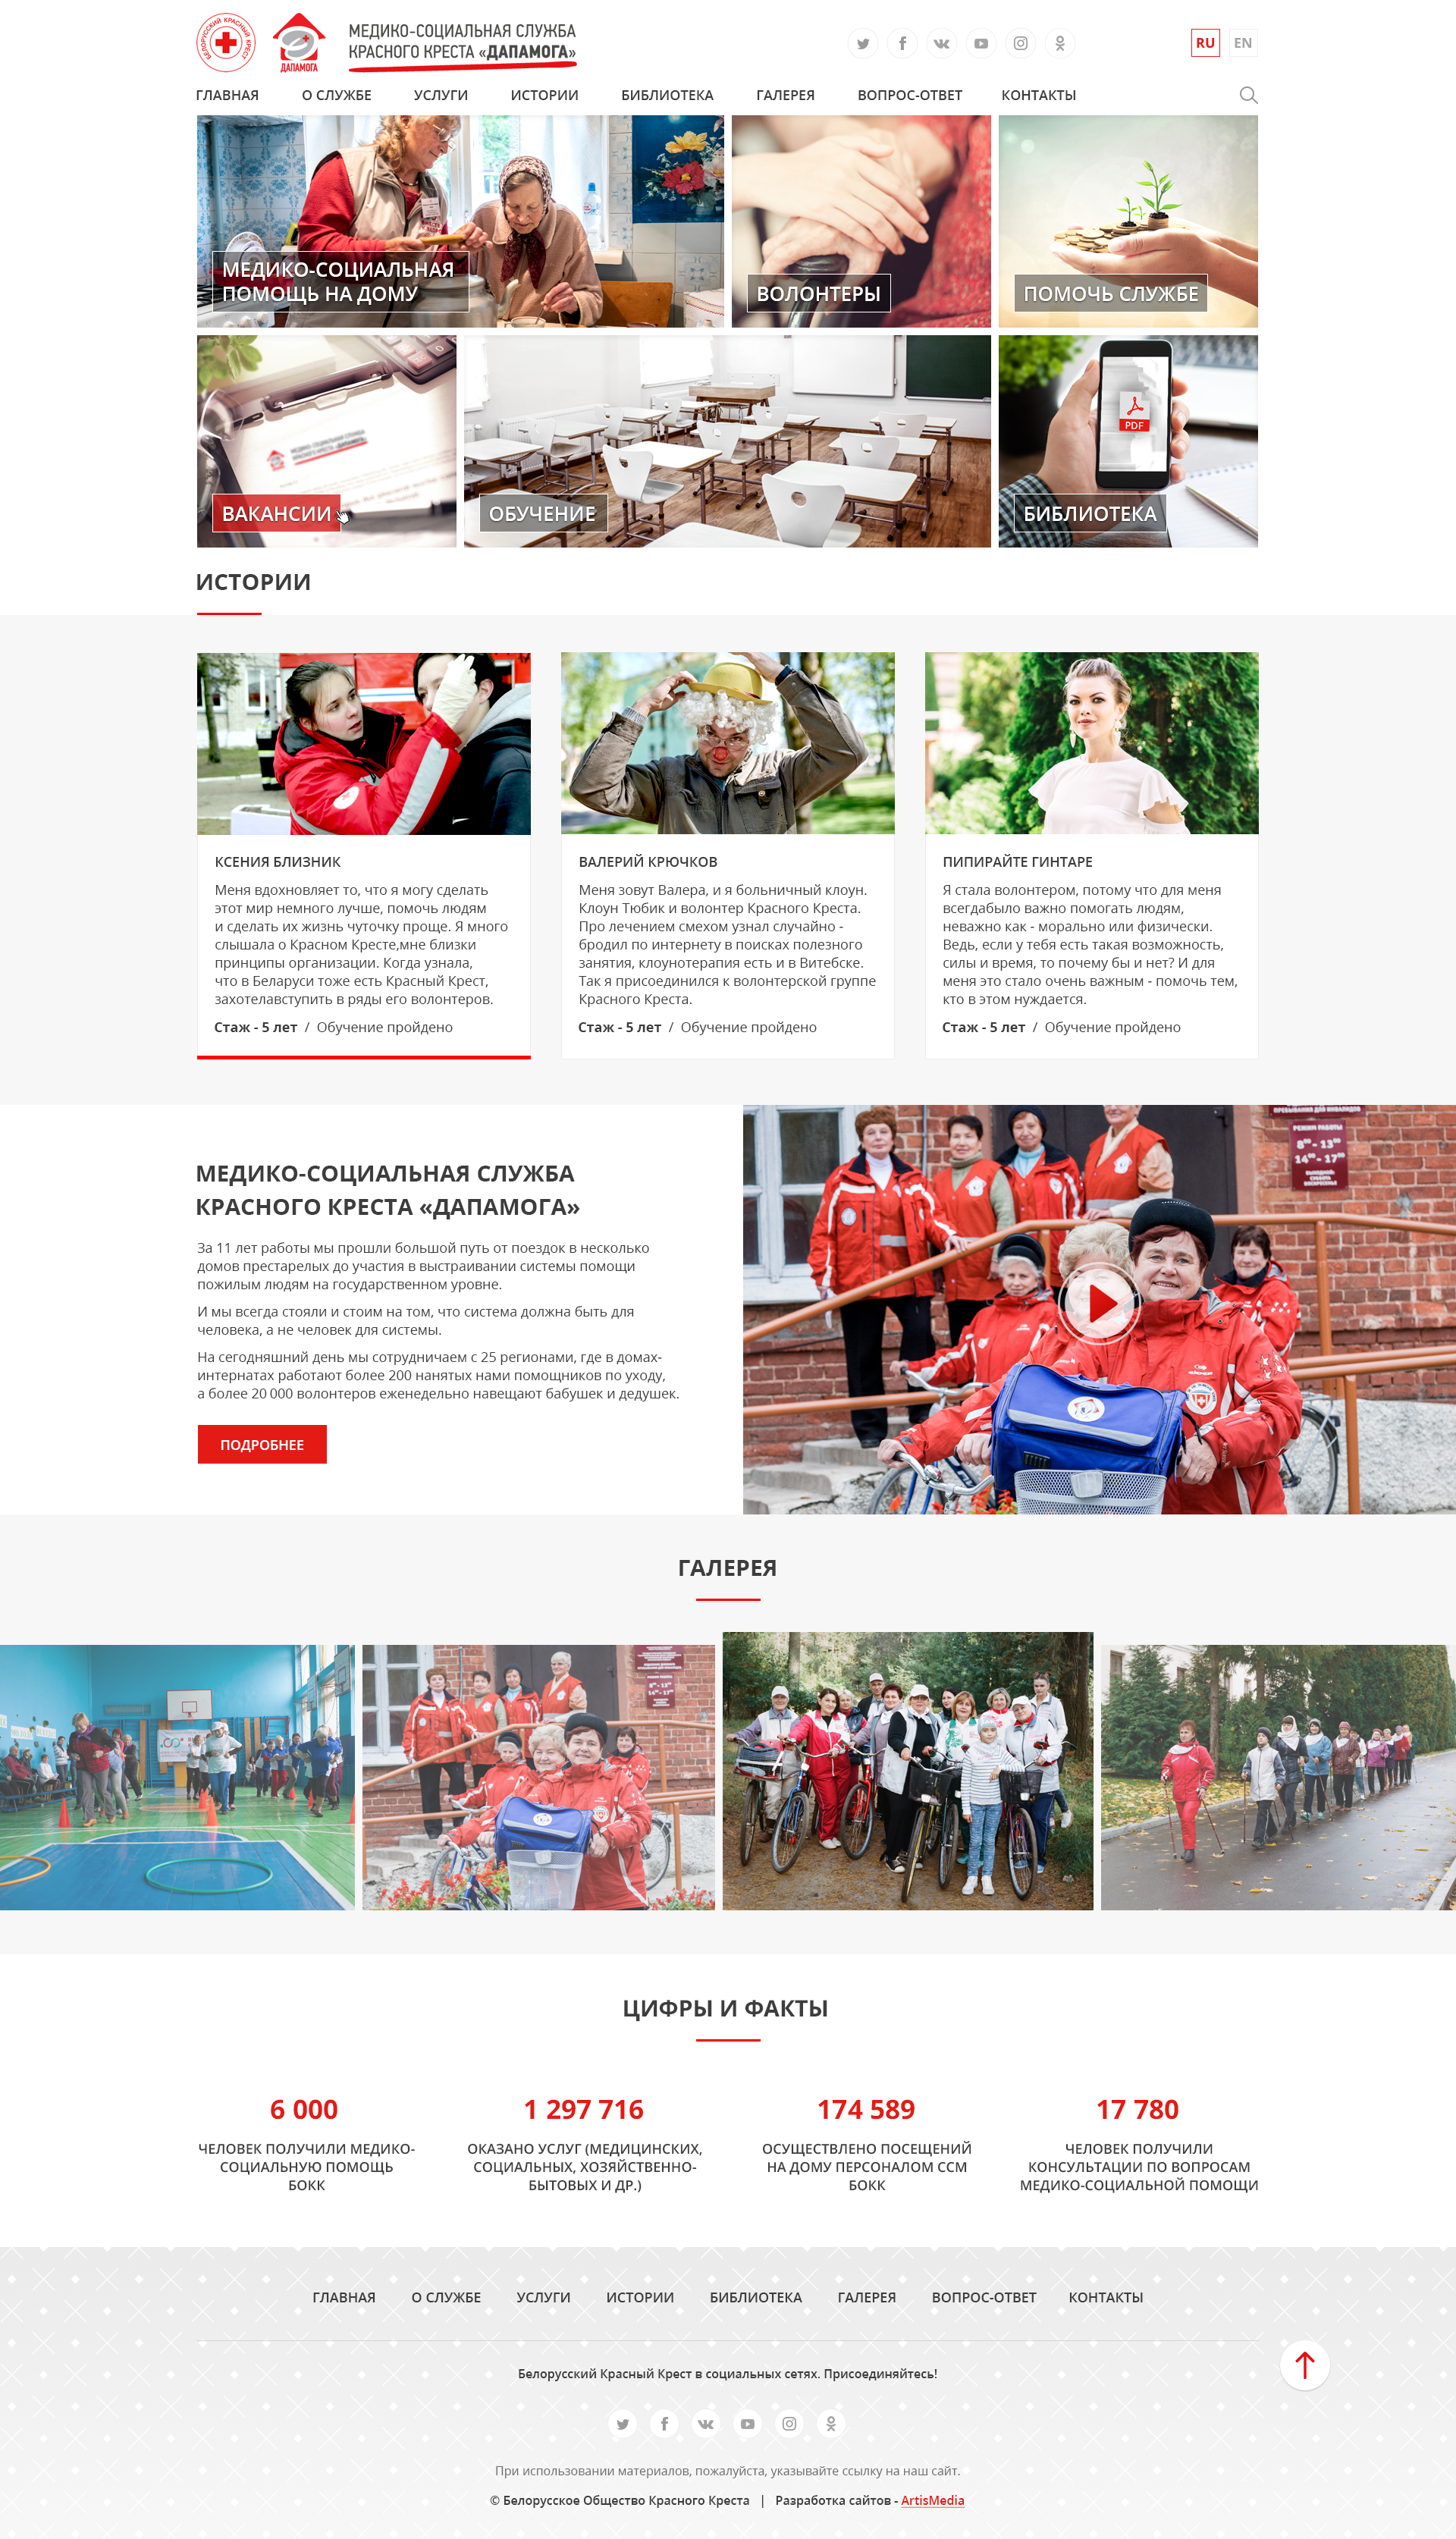 сайт медико-социальная служба красного креста «дапамога»